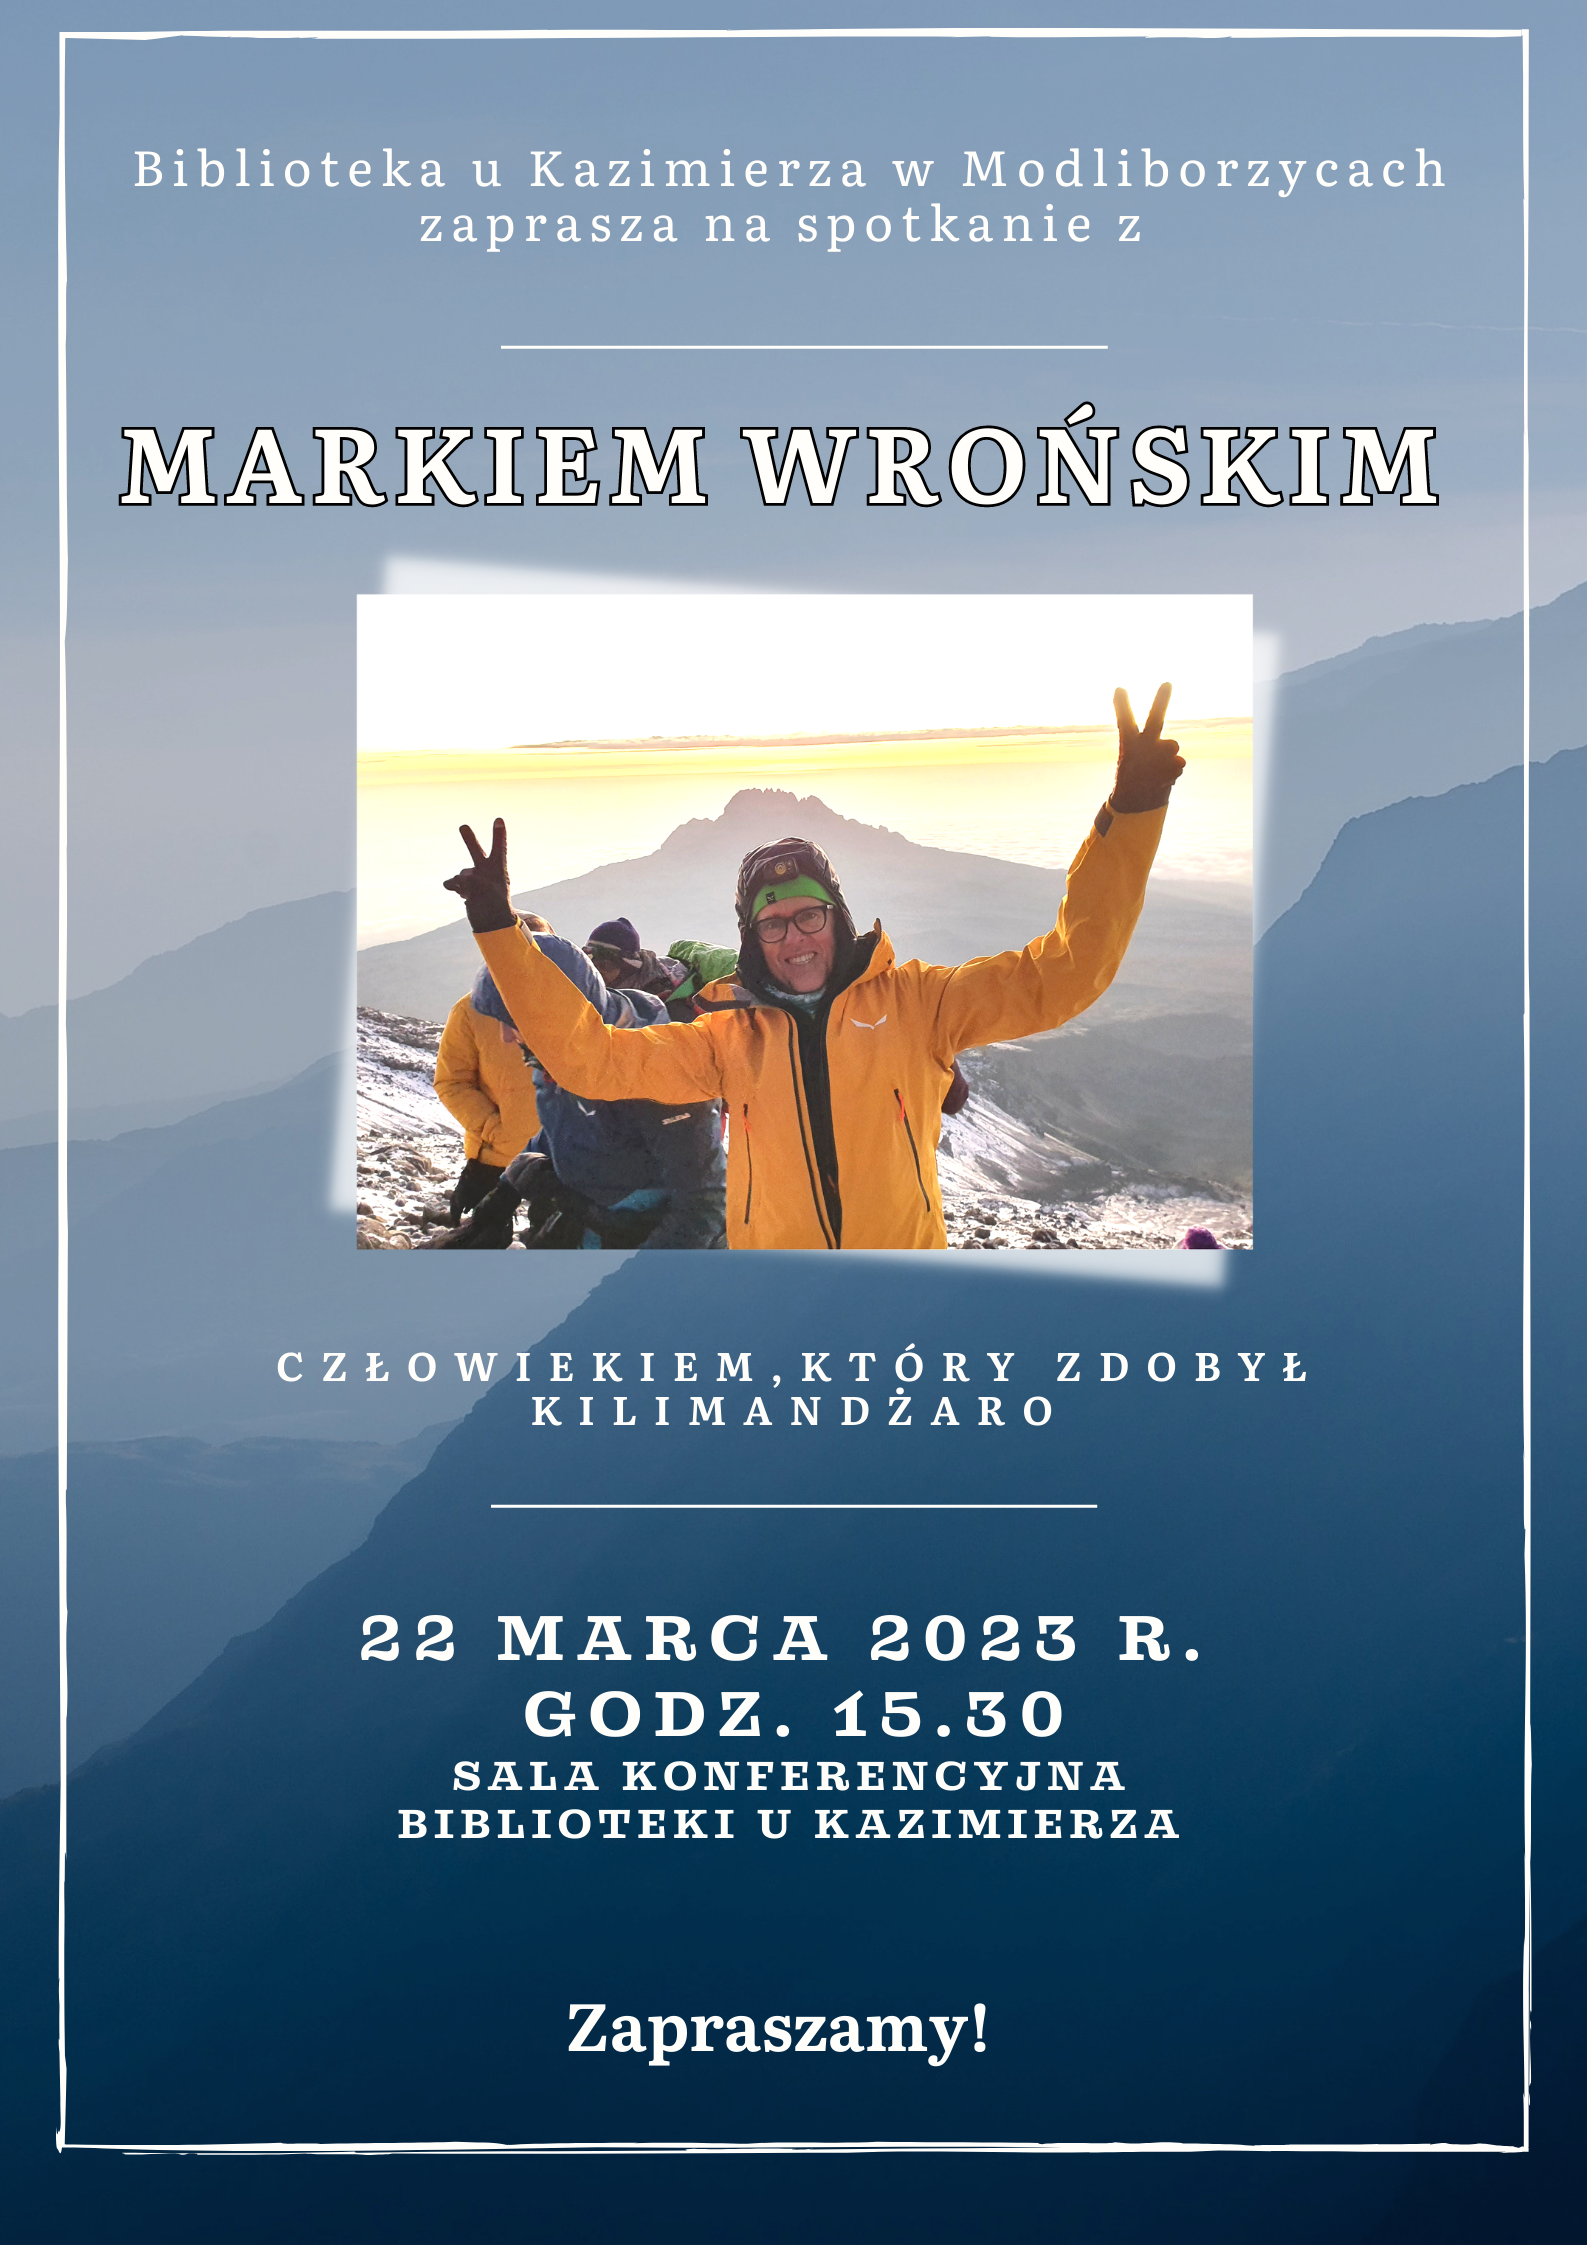    W środę, 22 marca 2023 r., gościć będziemy pana Marka Wrońskiego, który 25 lutego 2023 r. wraz z grupą Polaków zdobył najwyższy szczyt Afryki – Kilimandżaro (5895 m n.p.m).         Jeśli chcecie dowiedzieć się jak przebiegały przygotowania do wyprawy, jak wyglądało zdobycie góry, jakie to uczucie, gdy spełnia się swoje marzenia zapraszamy do Biblioteki u Kazimierza w środę, 22 marca 2023 r., o godzinie 15.30! Zapraszamy!